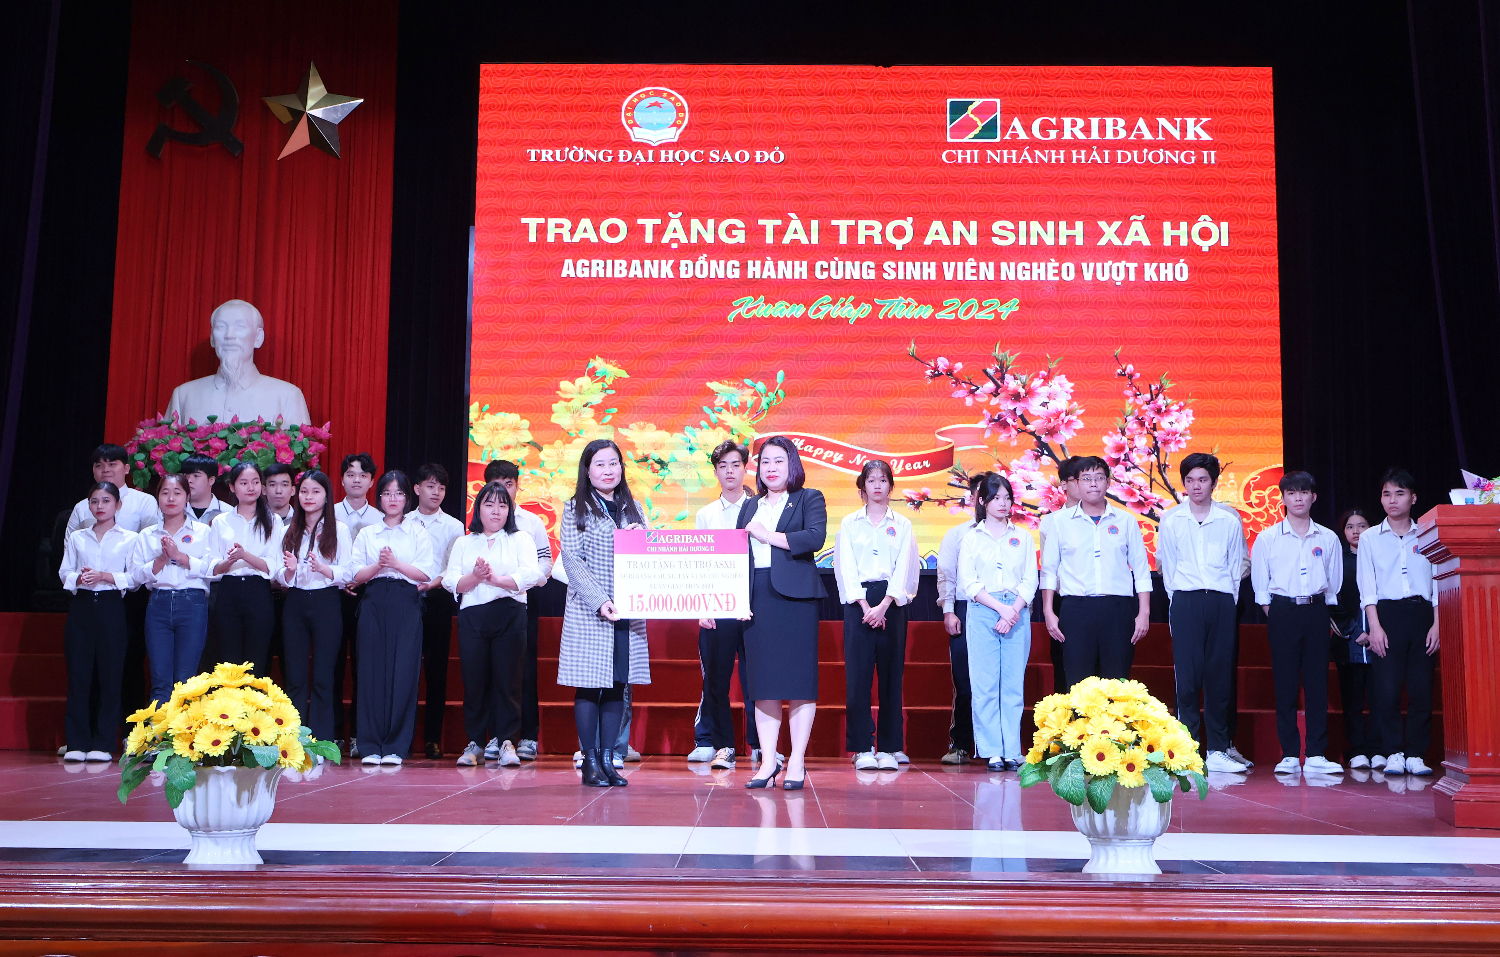 Ngân hàng Agribank chi nhánh Hải Dương II và Tỉnh Đoàn Hải Dương trao tặng 40 suất quà Tết cho sinh viên nghèo vượt khó học tập của Trường Đại học Sao Đỏ